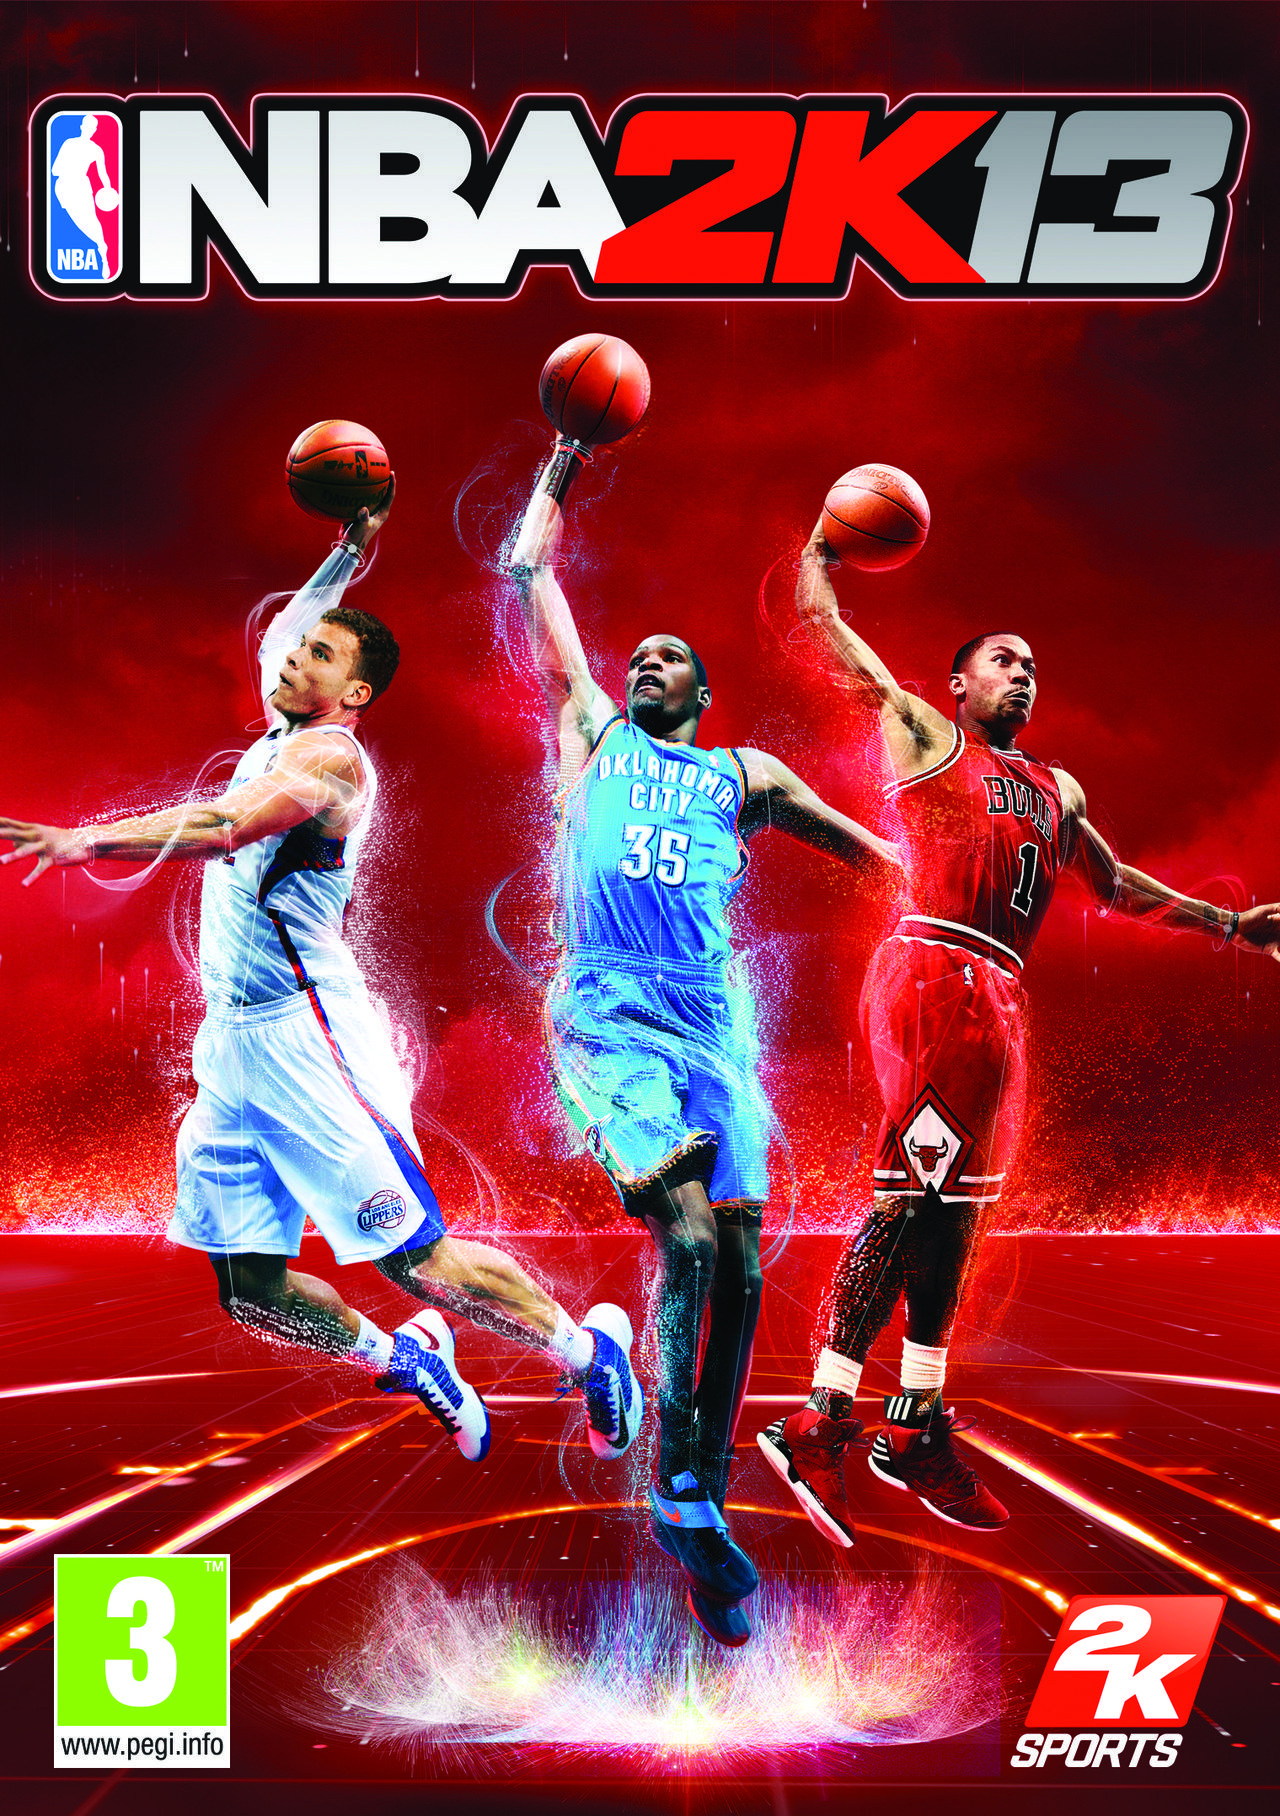 Emoción leopardo Rápido NBA 2K13 - Videojuego (PS3, Xbox 360, Wii U, PC, PSP y Wii) - Vandal